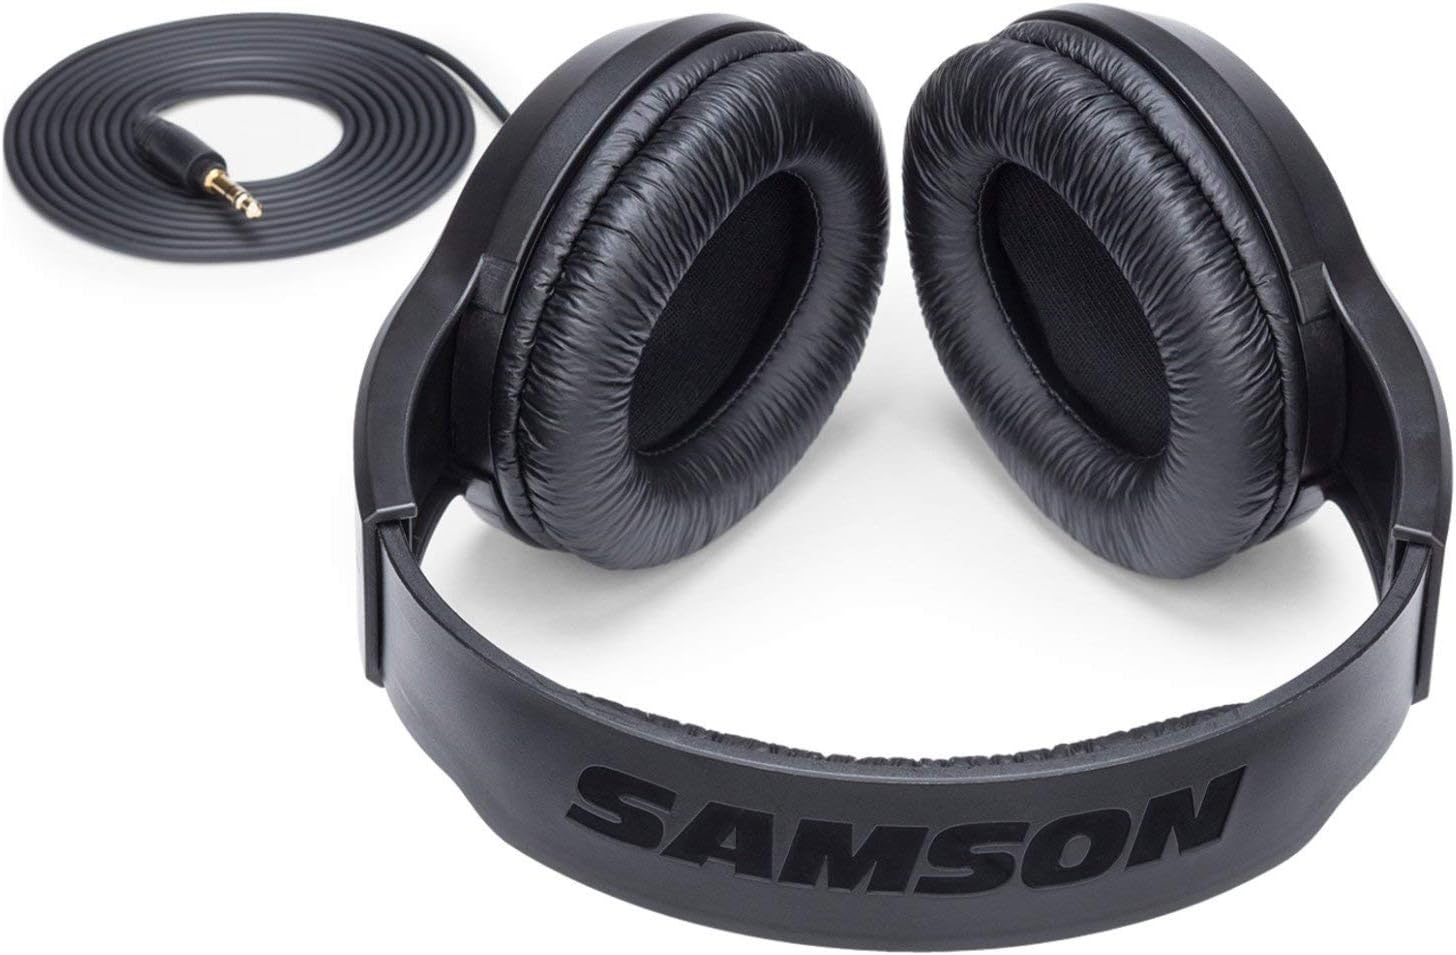 Samson SR350 Over Ear Stereo Headphones, (SASR350),Black